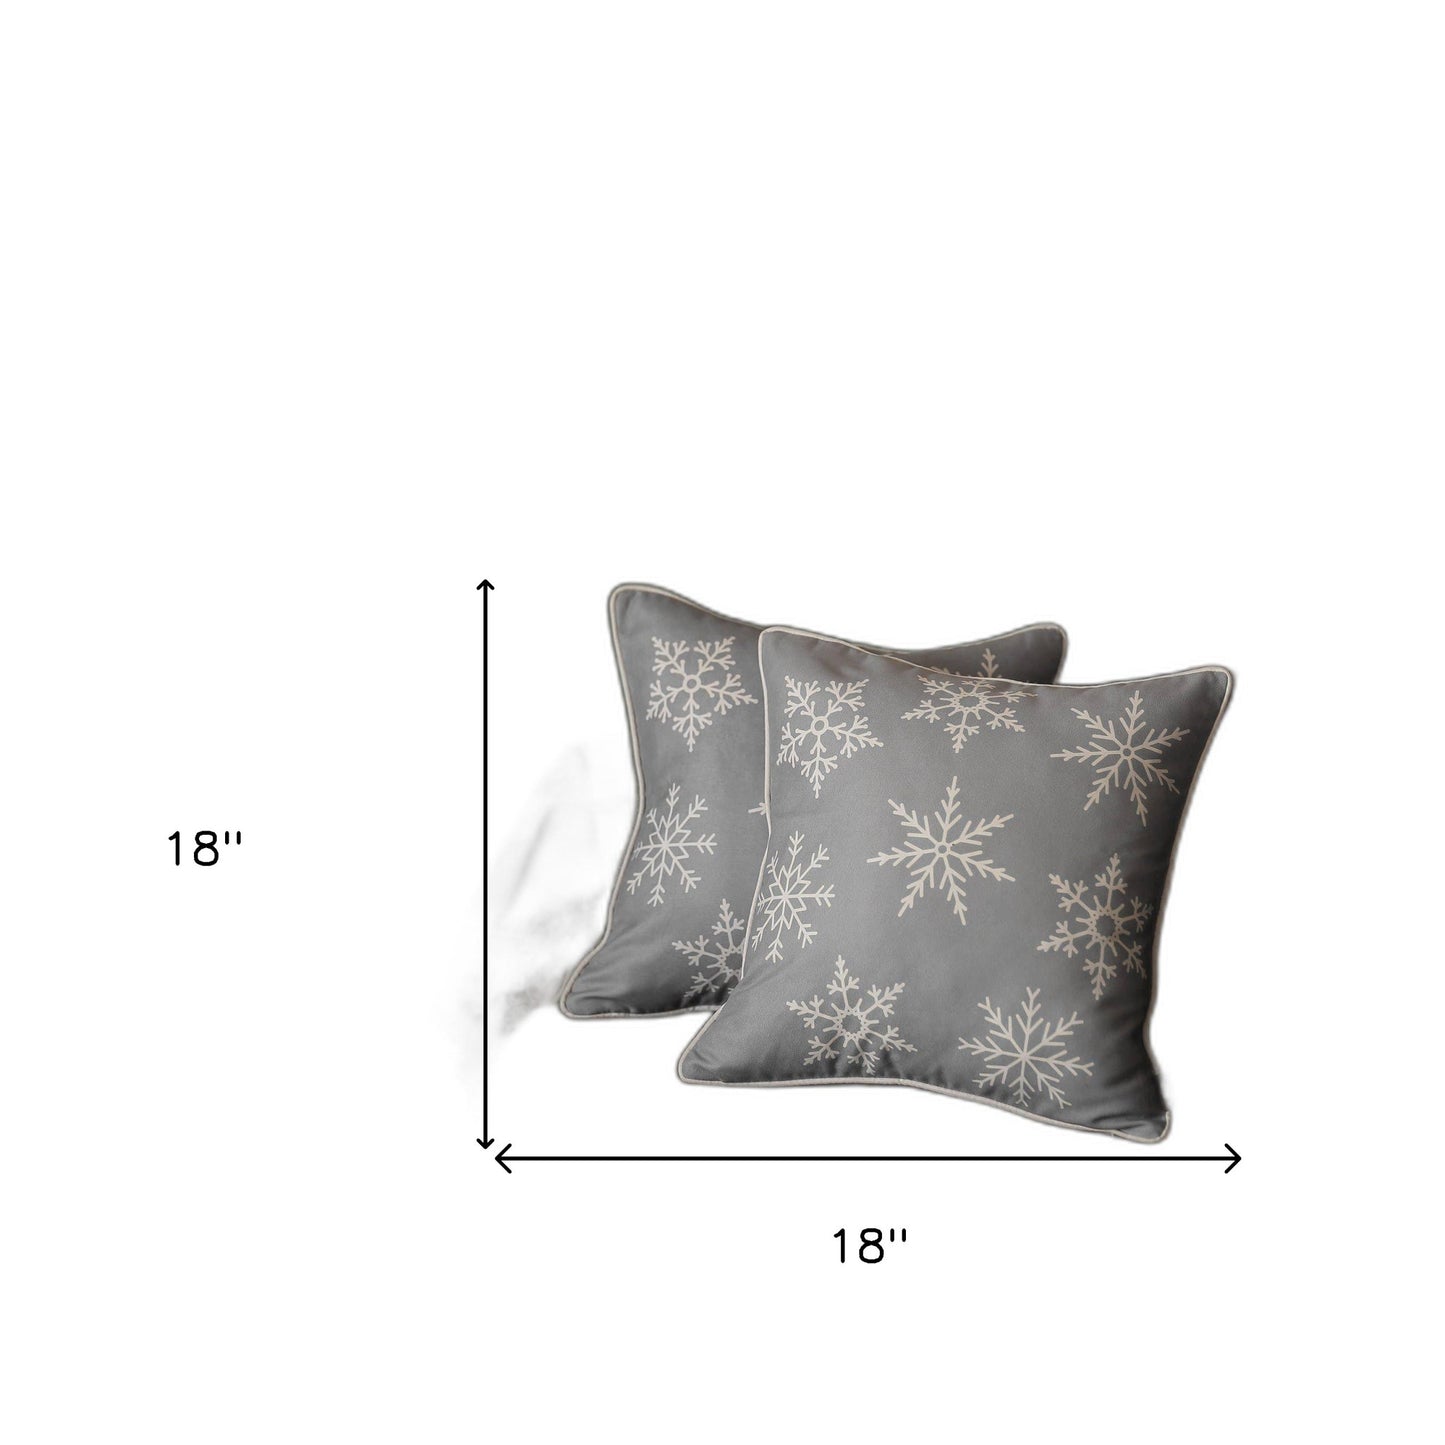 Set of 2 Gray and White Snowflakes Throw Pillows